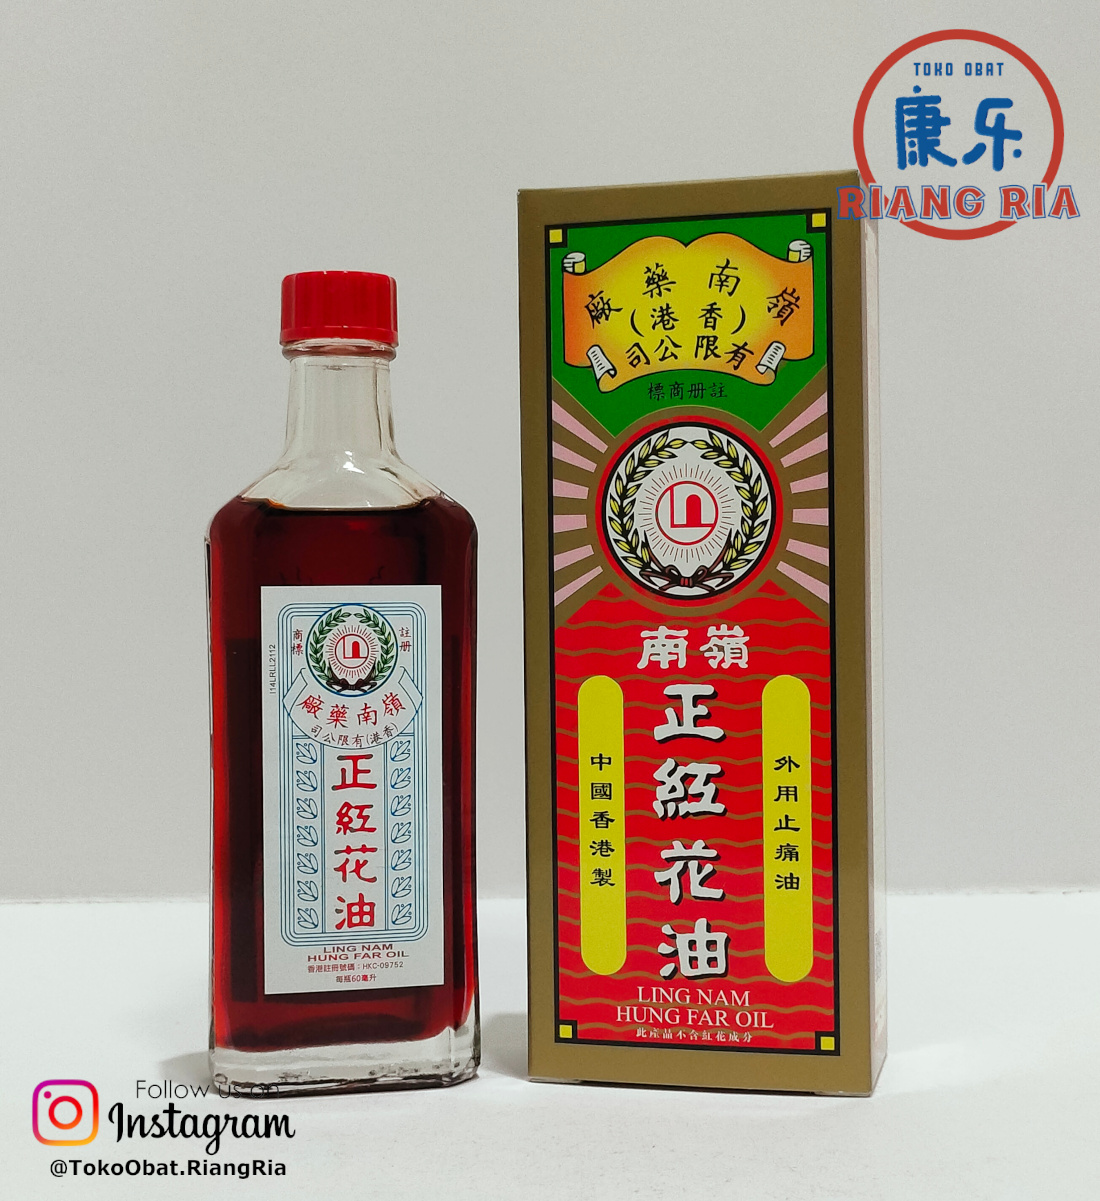 Ling Nam | Hung Far Oil / Zheng Hong Hua You | HK – Minyak Gosok Merah